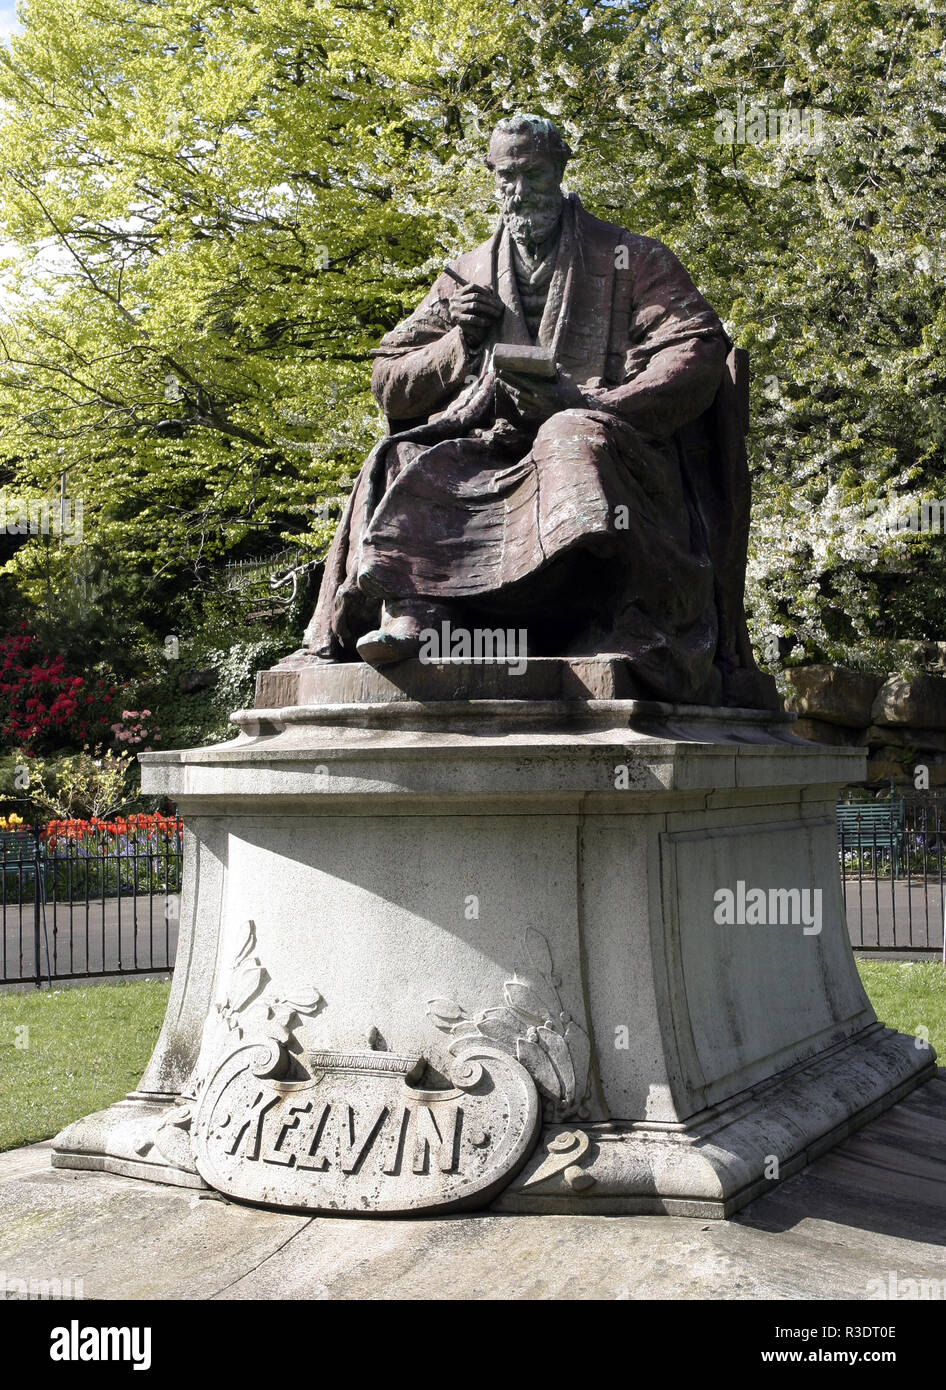 Esta estatua de Lord Kelvin, (William Thomson), quien fue un ingeniero y físico matemático es mejor conocido para la elaboración de la escala de temperatura absoluta. La estatua se encuentra en el parque Kelvingrove junto al río Kelvin en Glasgow. Foto de stock